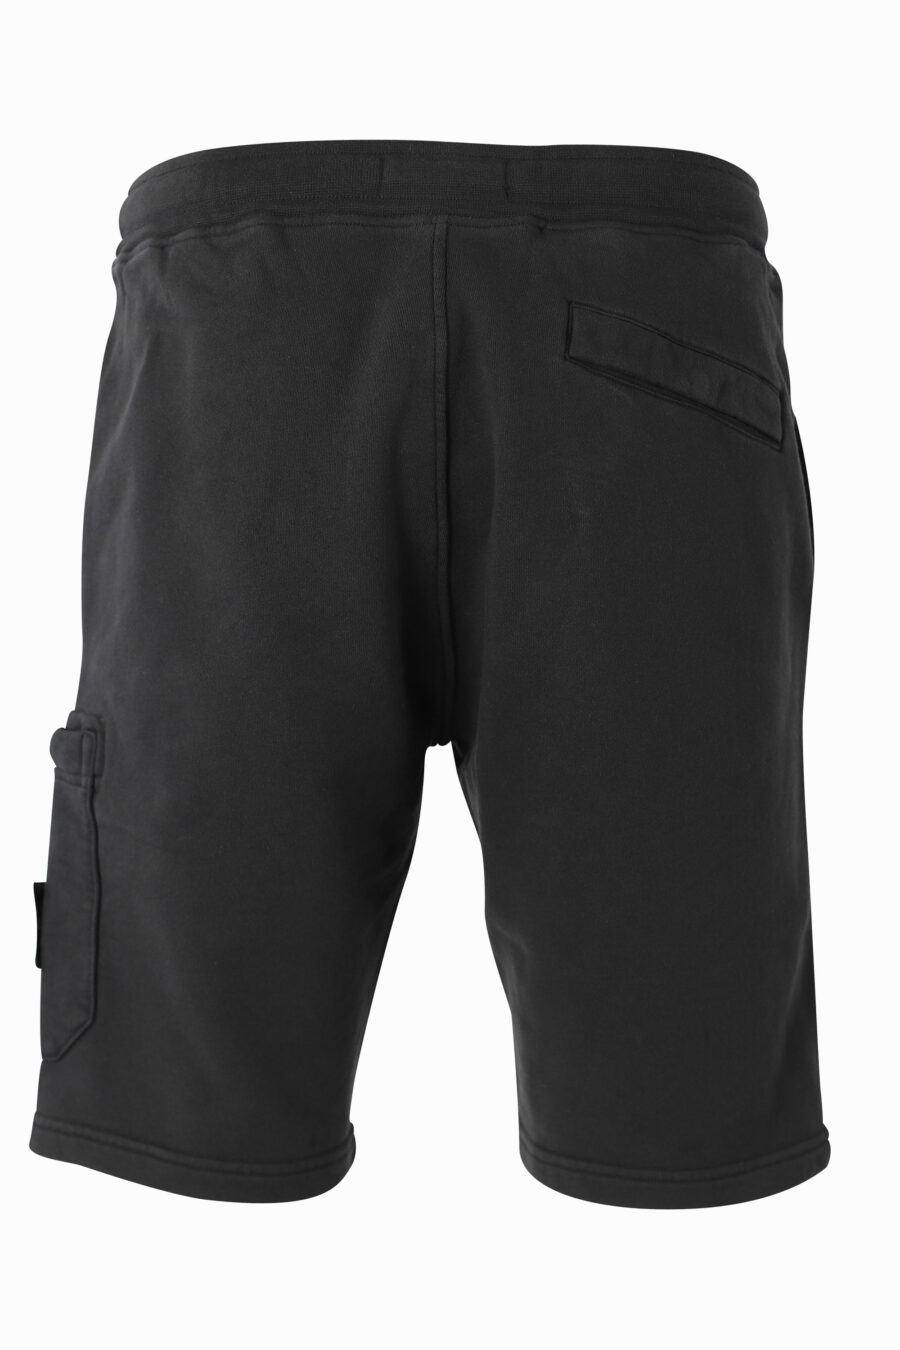 Pantalón corto negro con parche lateral - IMG 1014